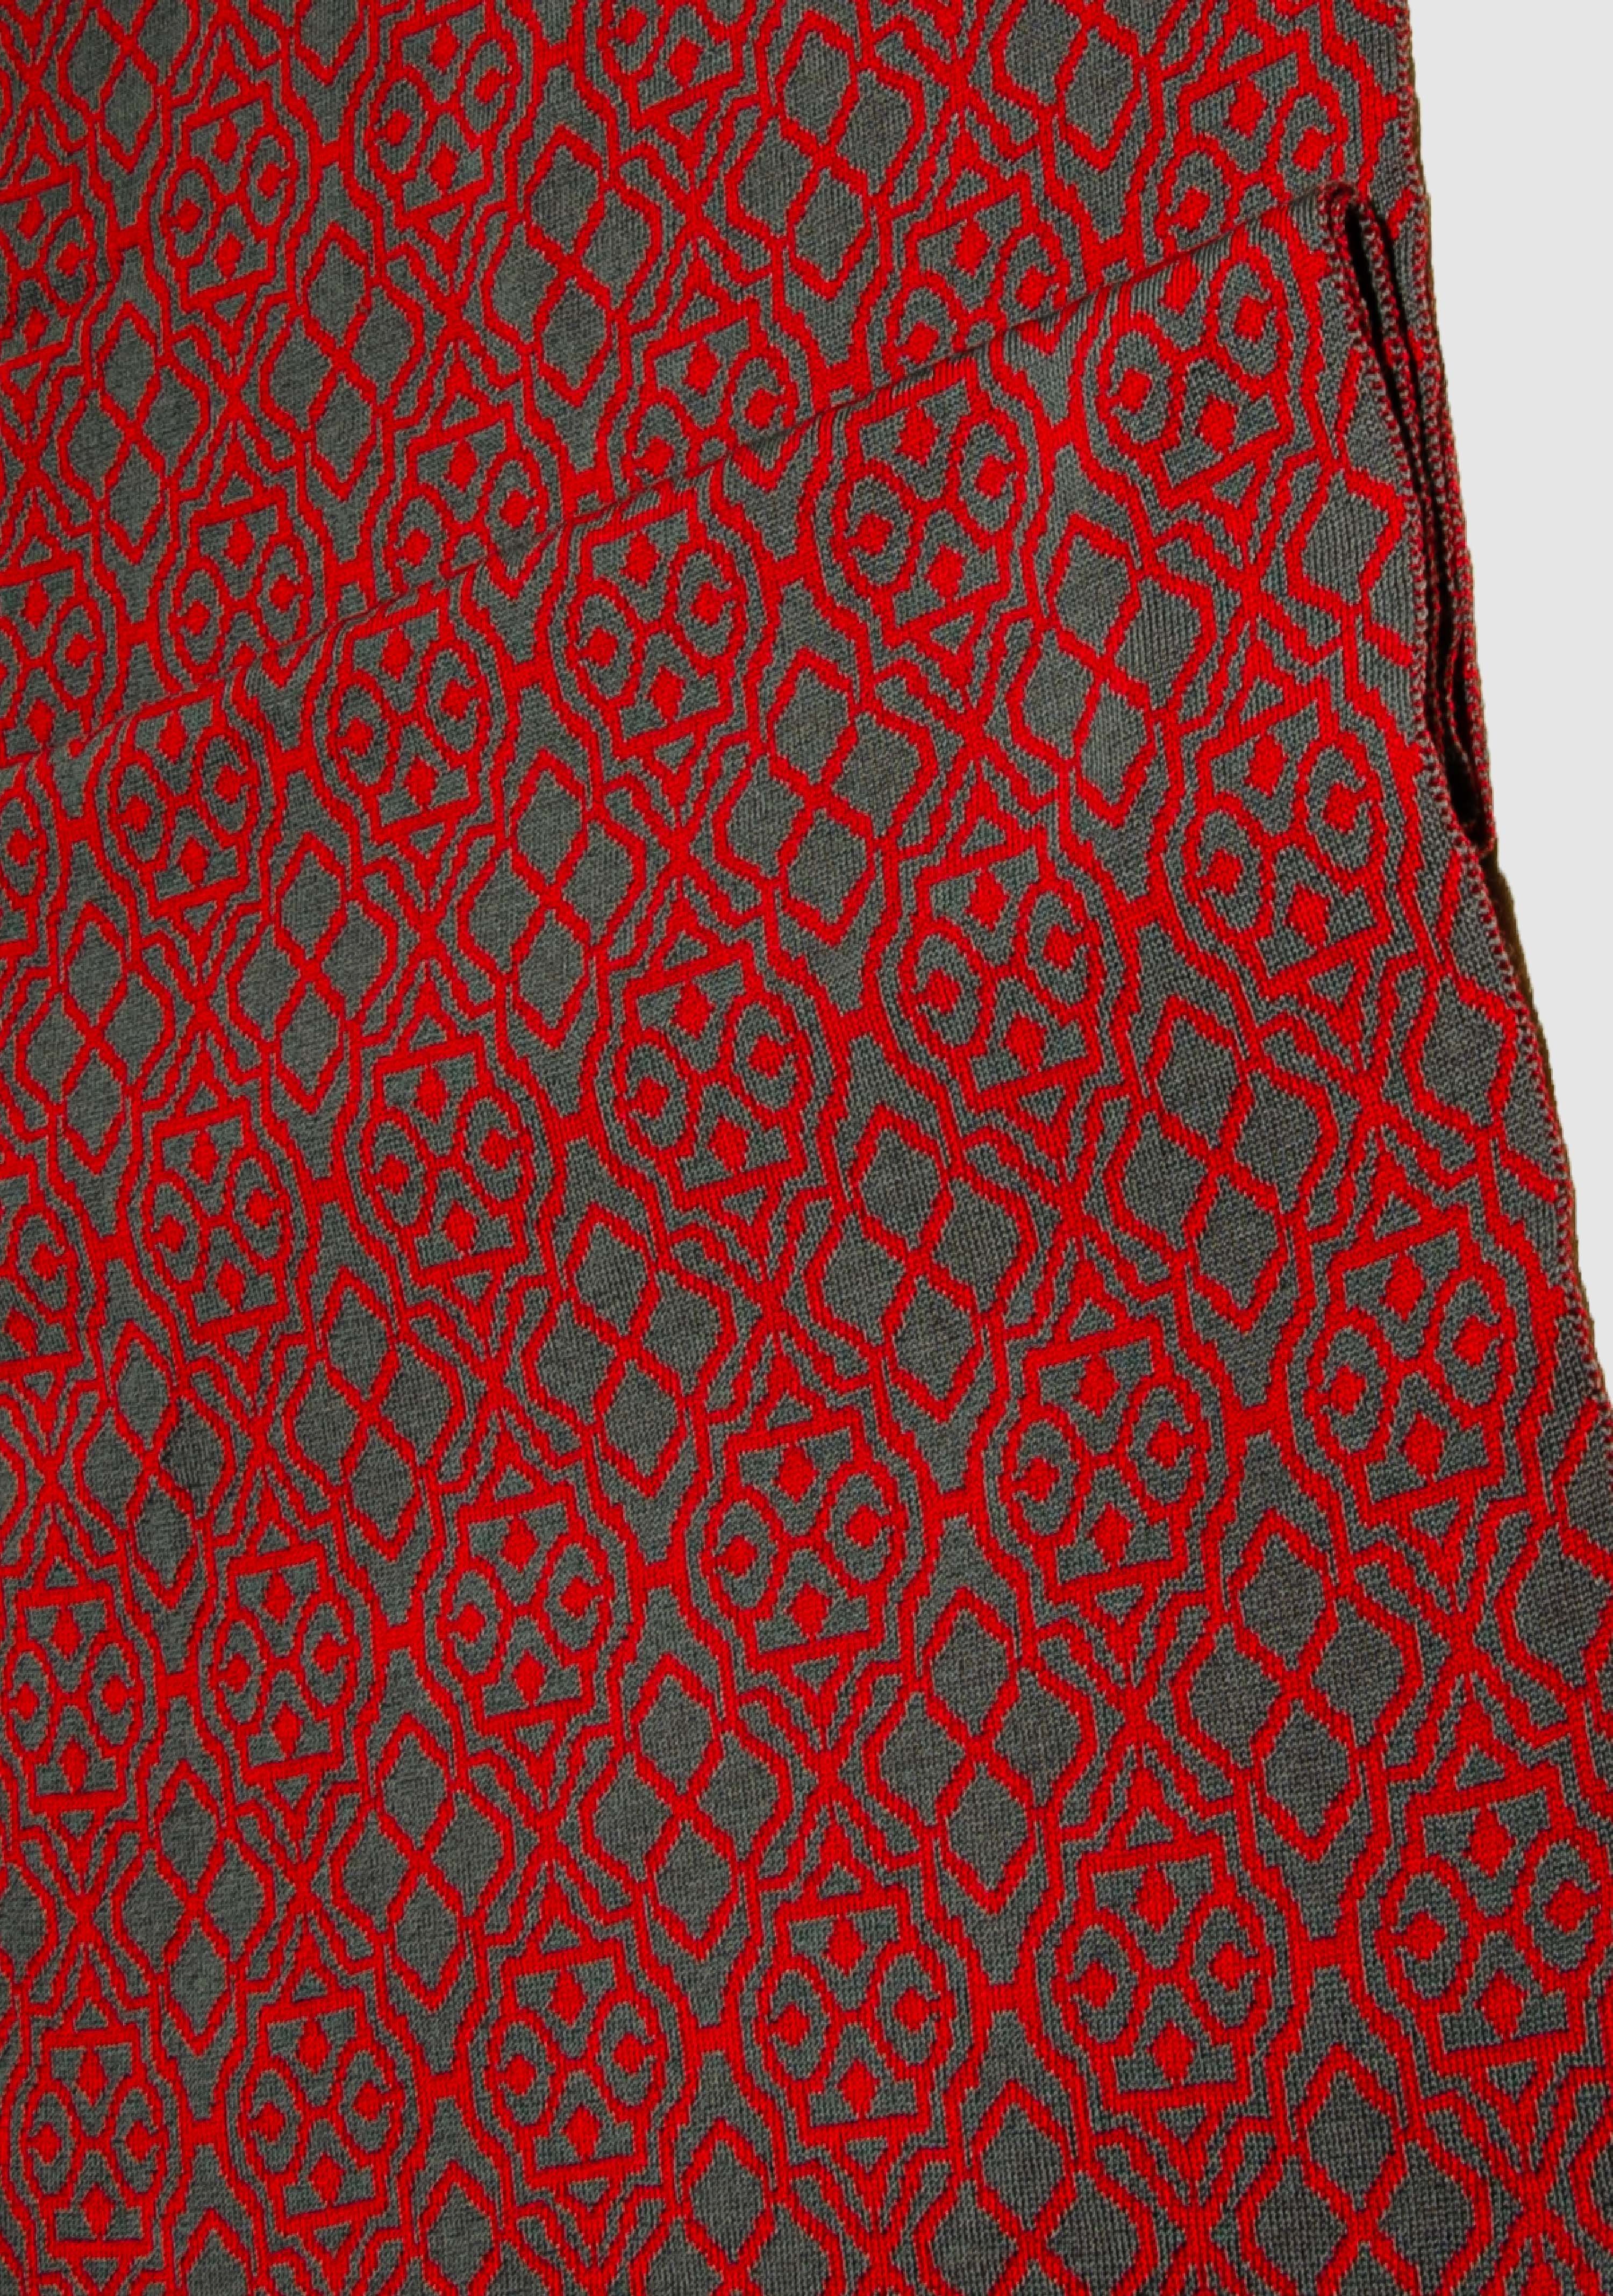 LANARTO slow fashion Wollschal Netz Farben rot_graphit Schal 100% schönen zweifarbig Merino in extrasoft